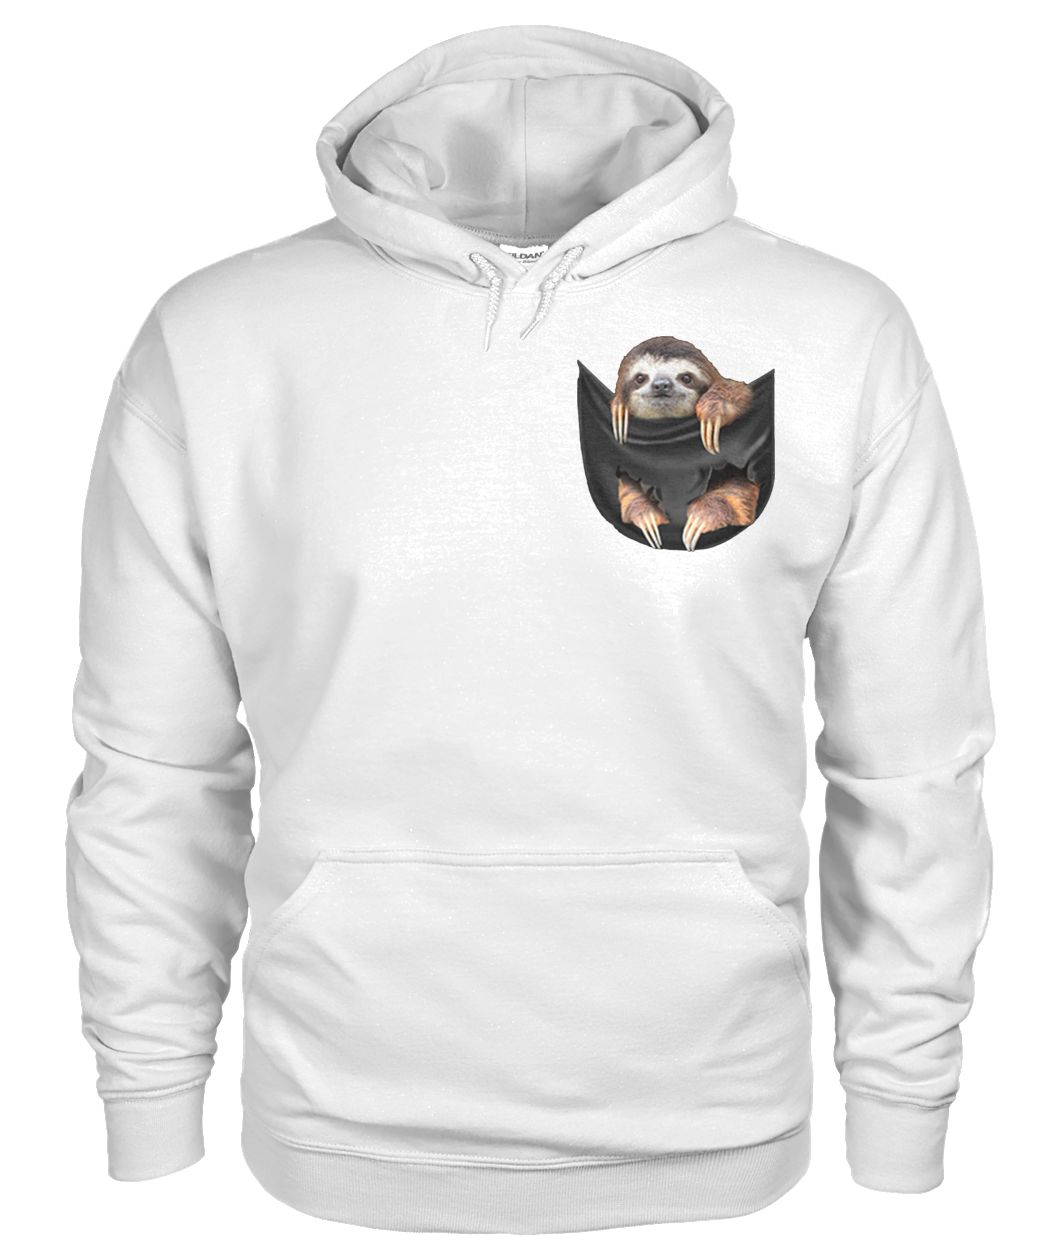 Sloth in the pocket gildan hoodie